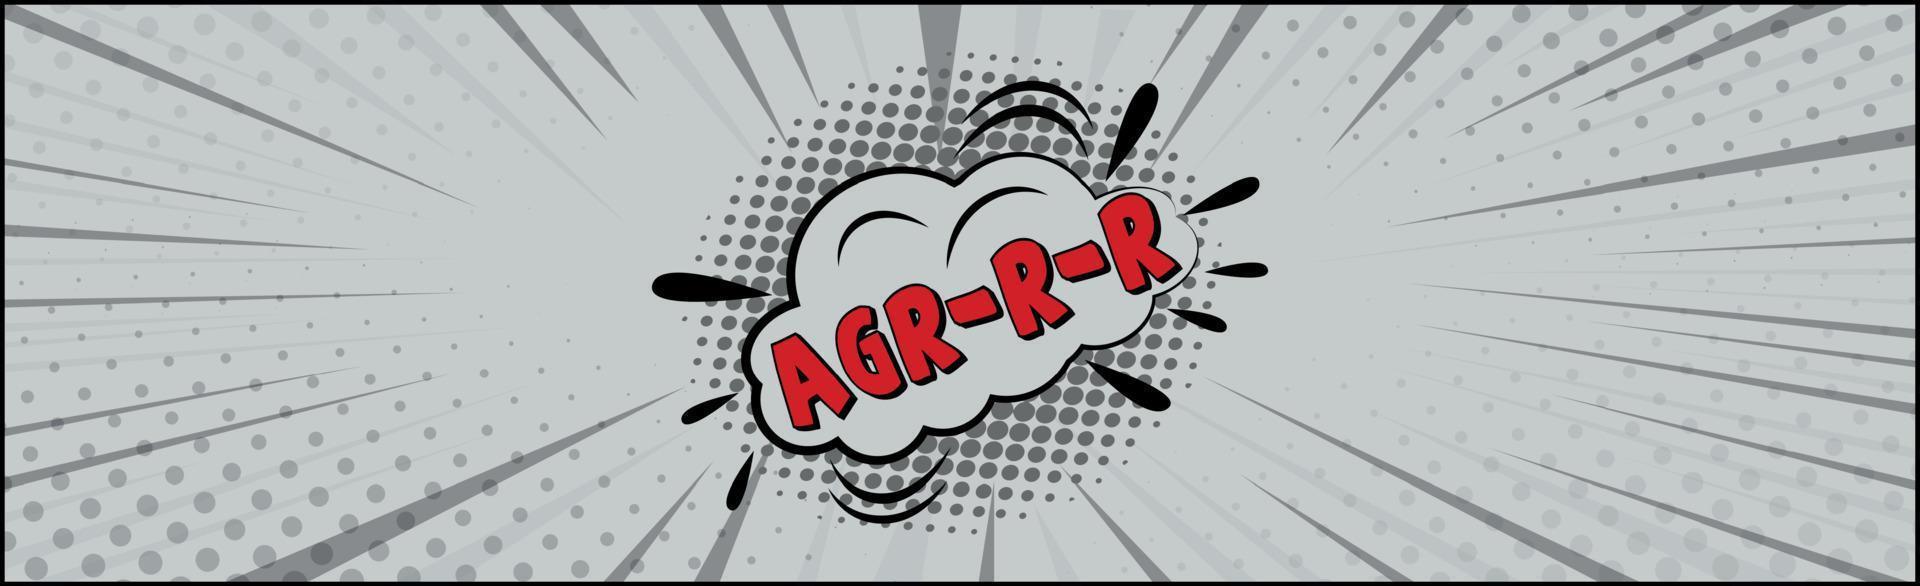 letras de cómic agr-rr sobre fondo blanco - vector